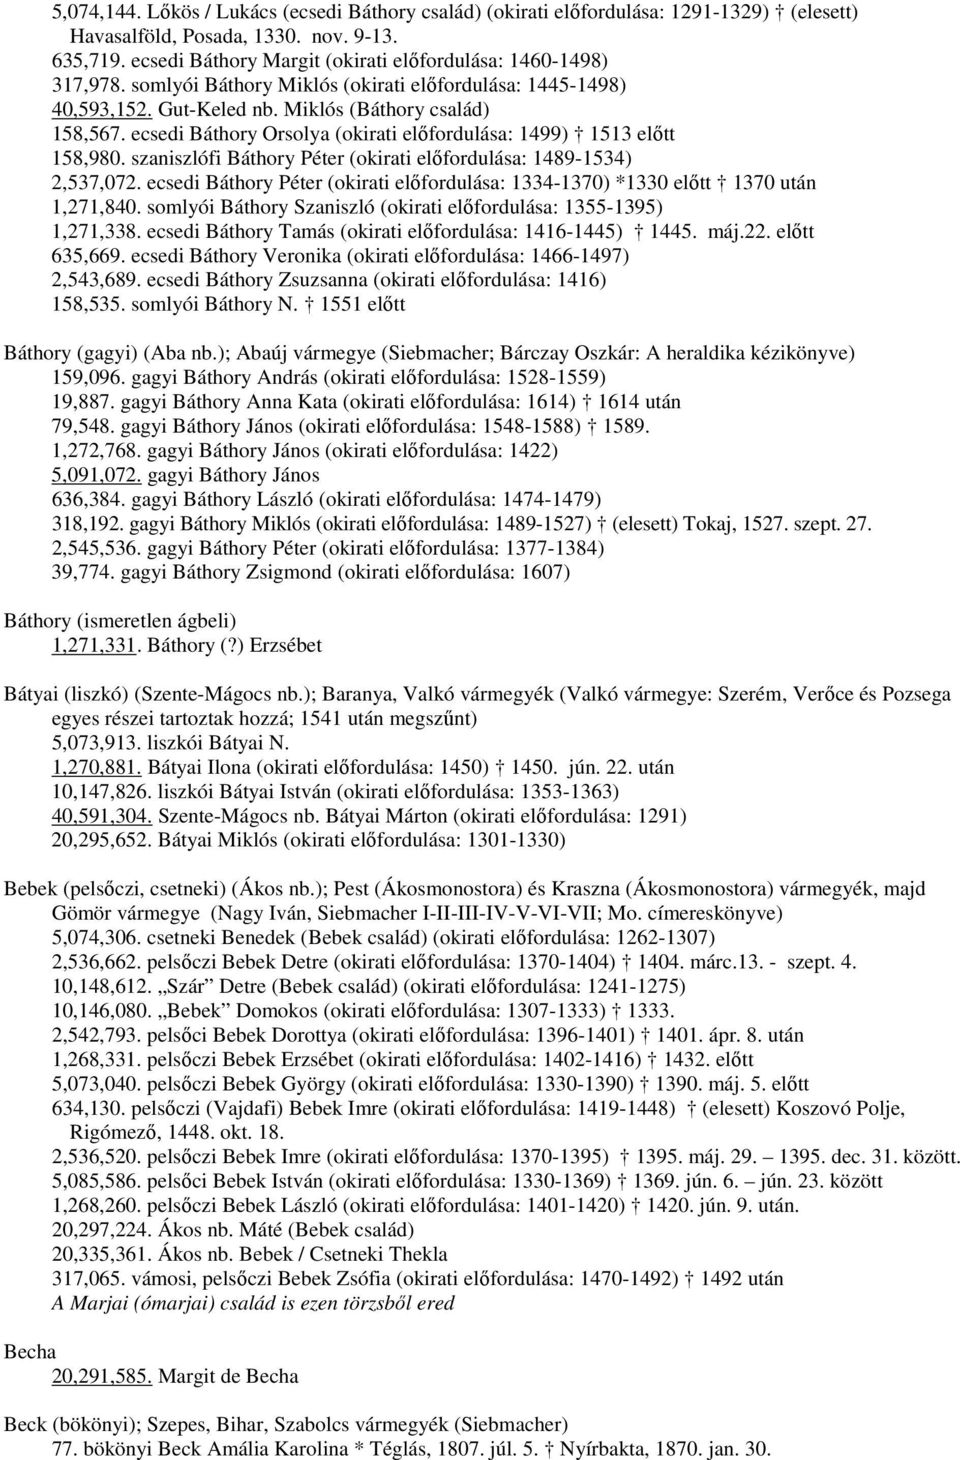 ecsedi Báthory Orsolya (okirati előfordulása: 1499) 1513 előtt 158,980. szaniszlófi Báthory Péter (okirati előfordulása: 1489-1534) 2,537,072.